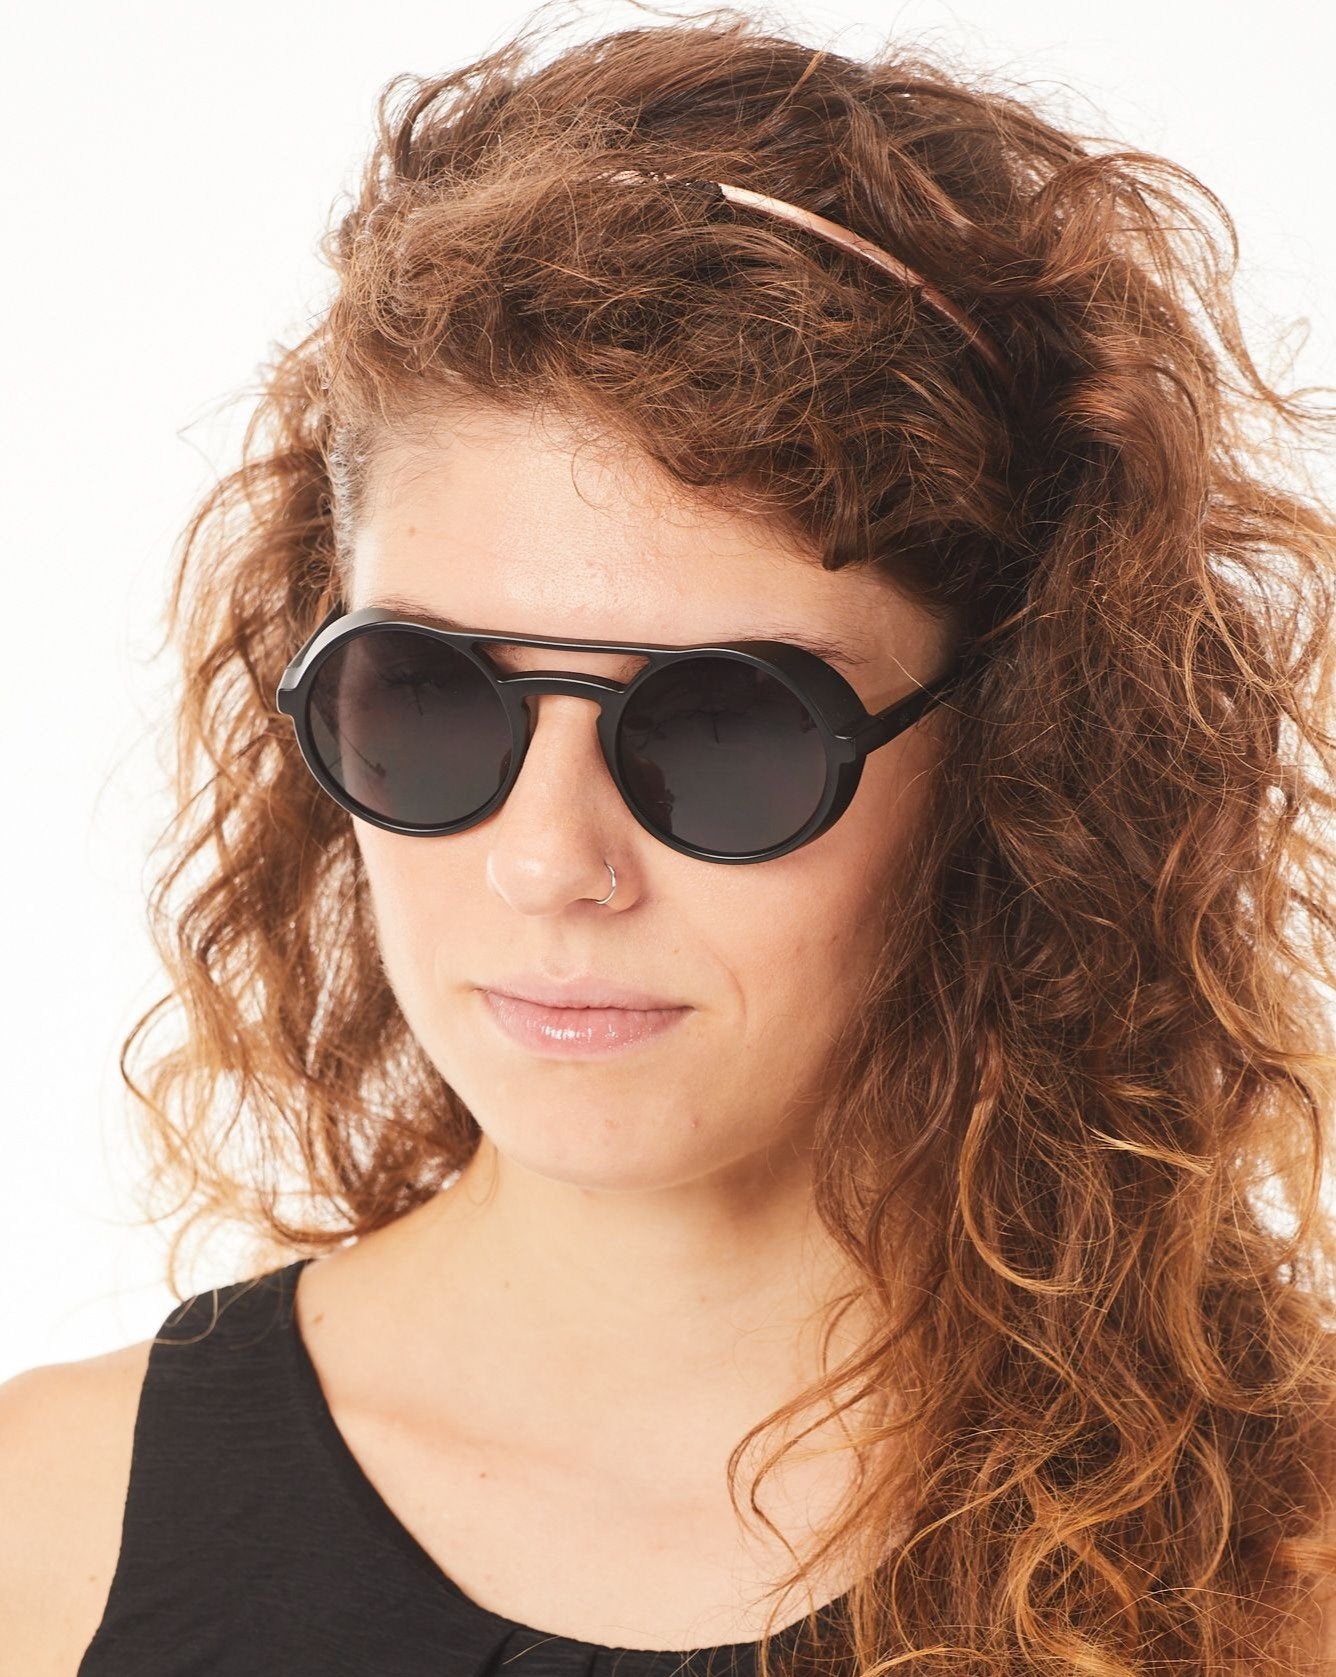 Aptica Polar Panto Cepeus Sunglasses Unisex Polarised Sun Lens Female Model